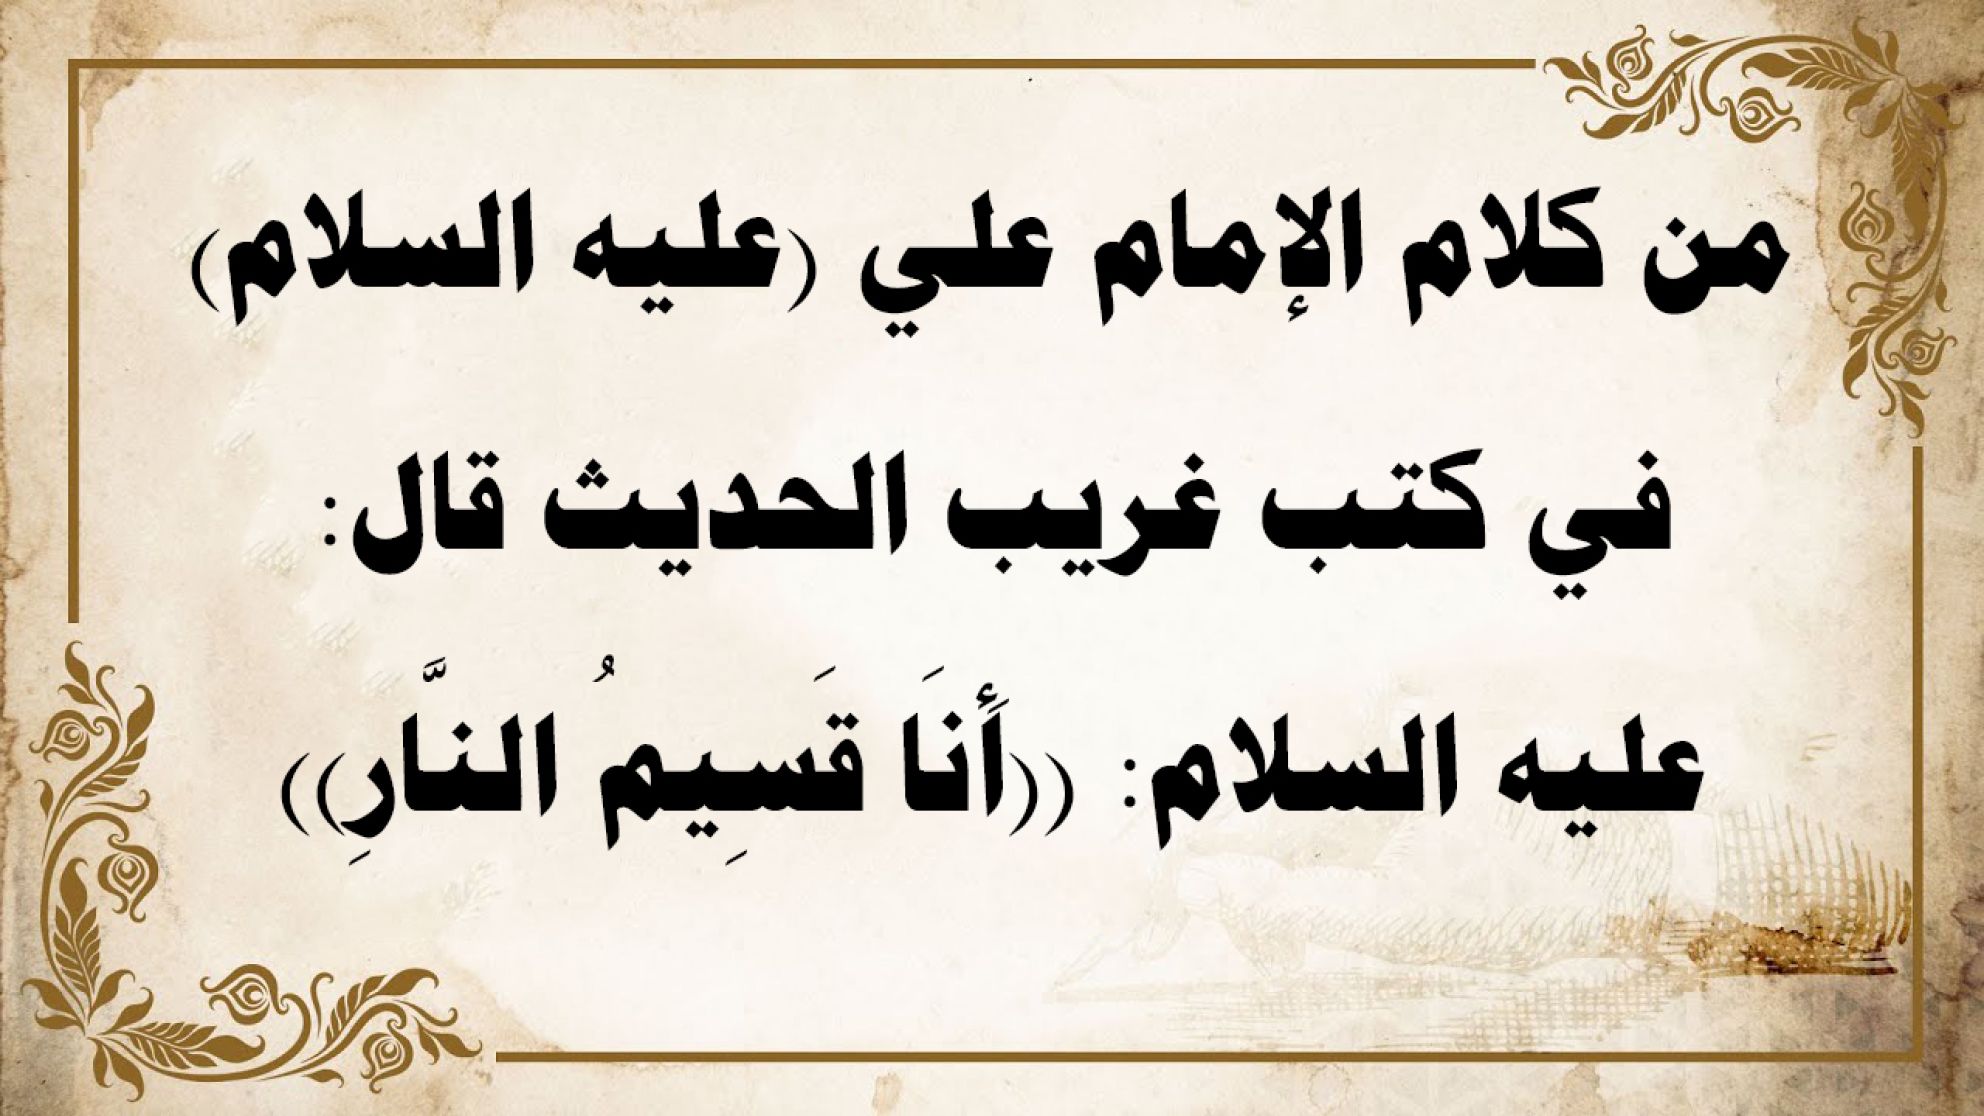 من كلام الإمام علي (عليه السلام) في كتب غريب الحديث قال عليه السلام: ((أَنَا قَسِيمُ النَّارِ))